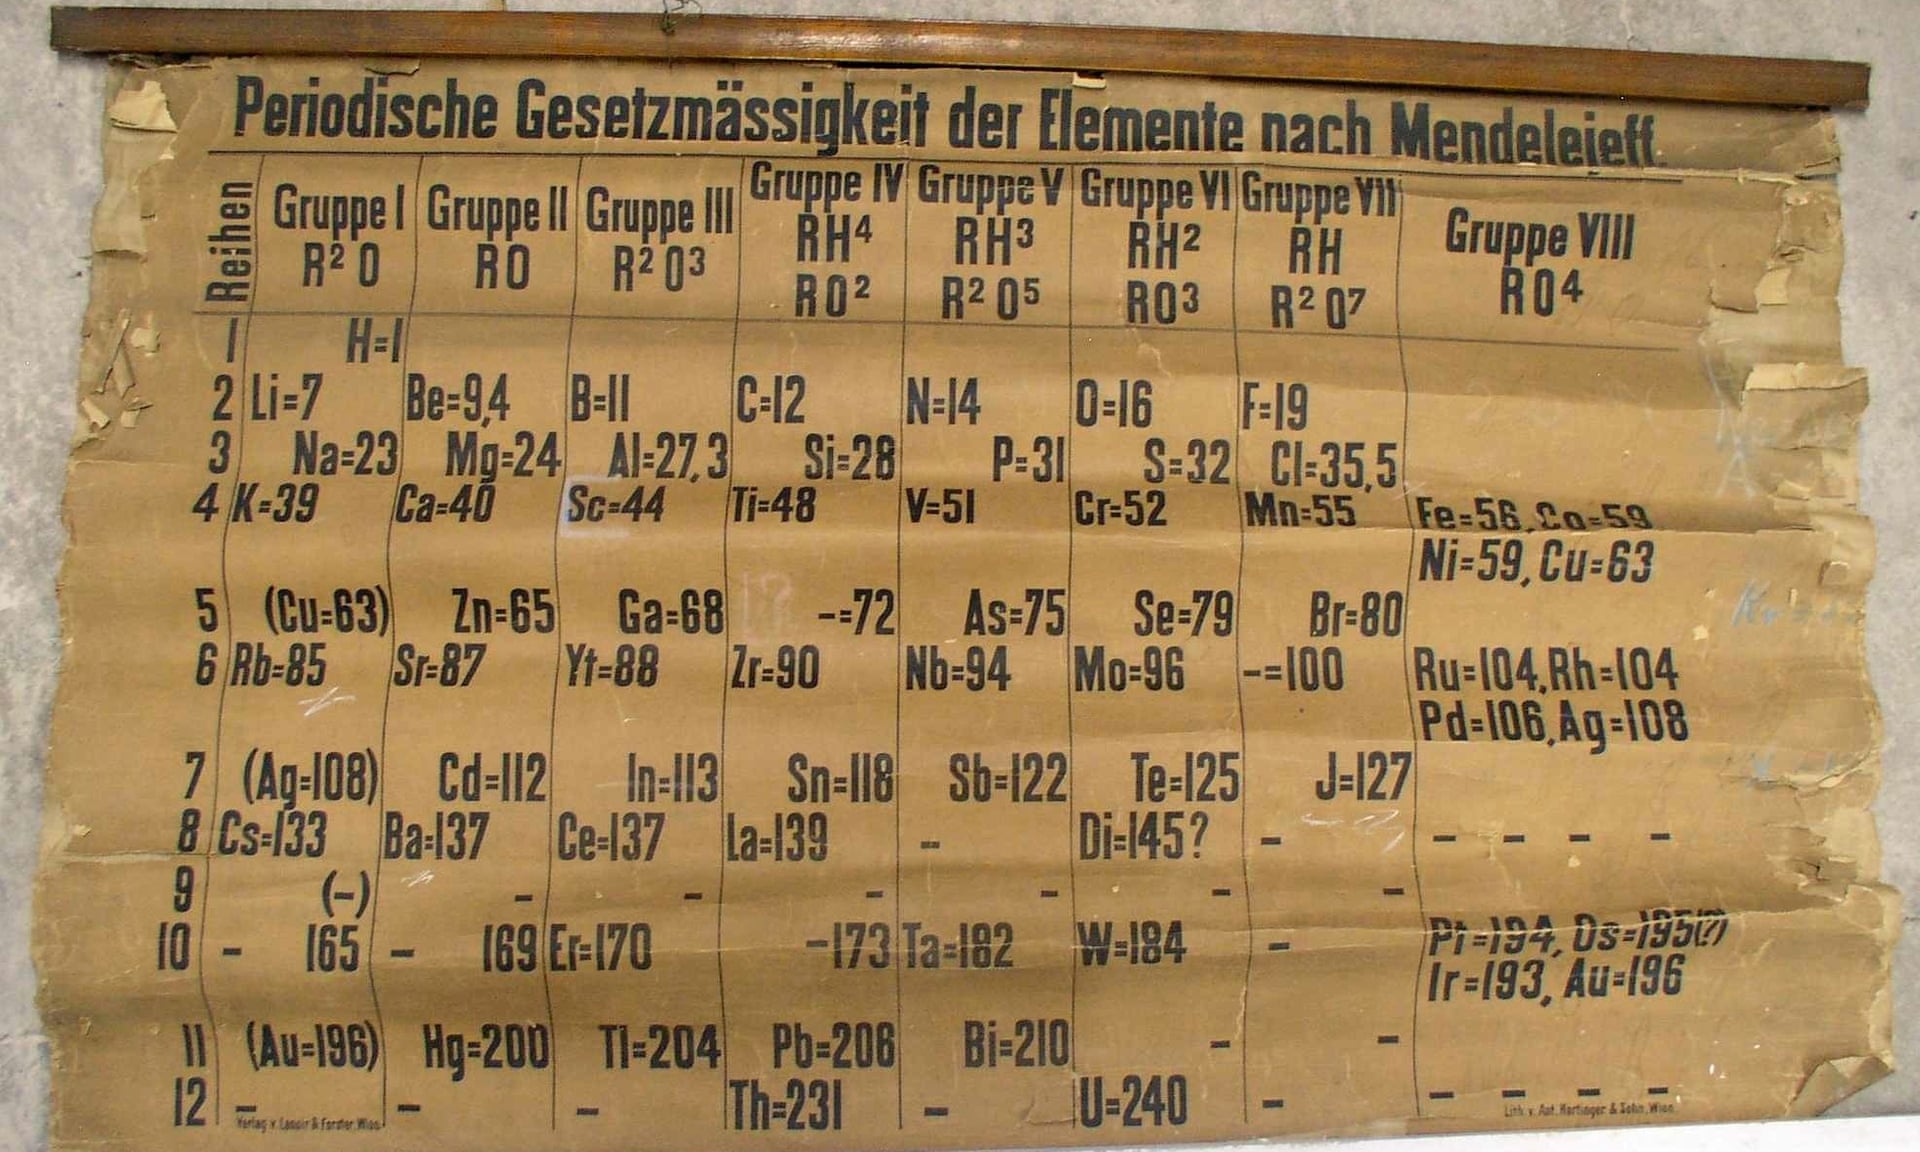 El científico accidentalmente encontré la versión anterior de la tabla periódica de mendeleiev